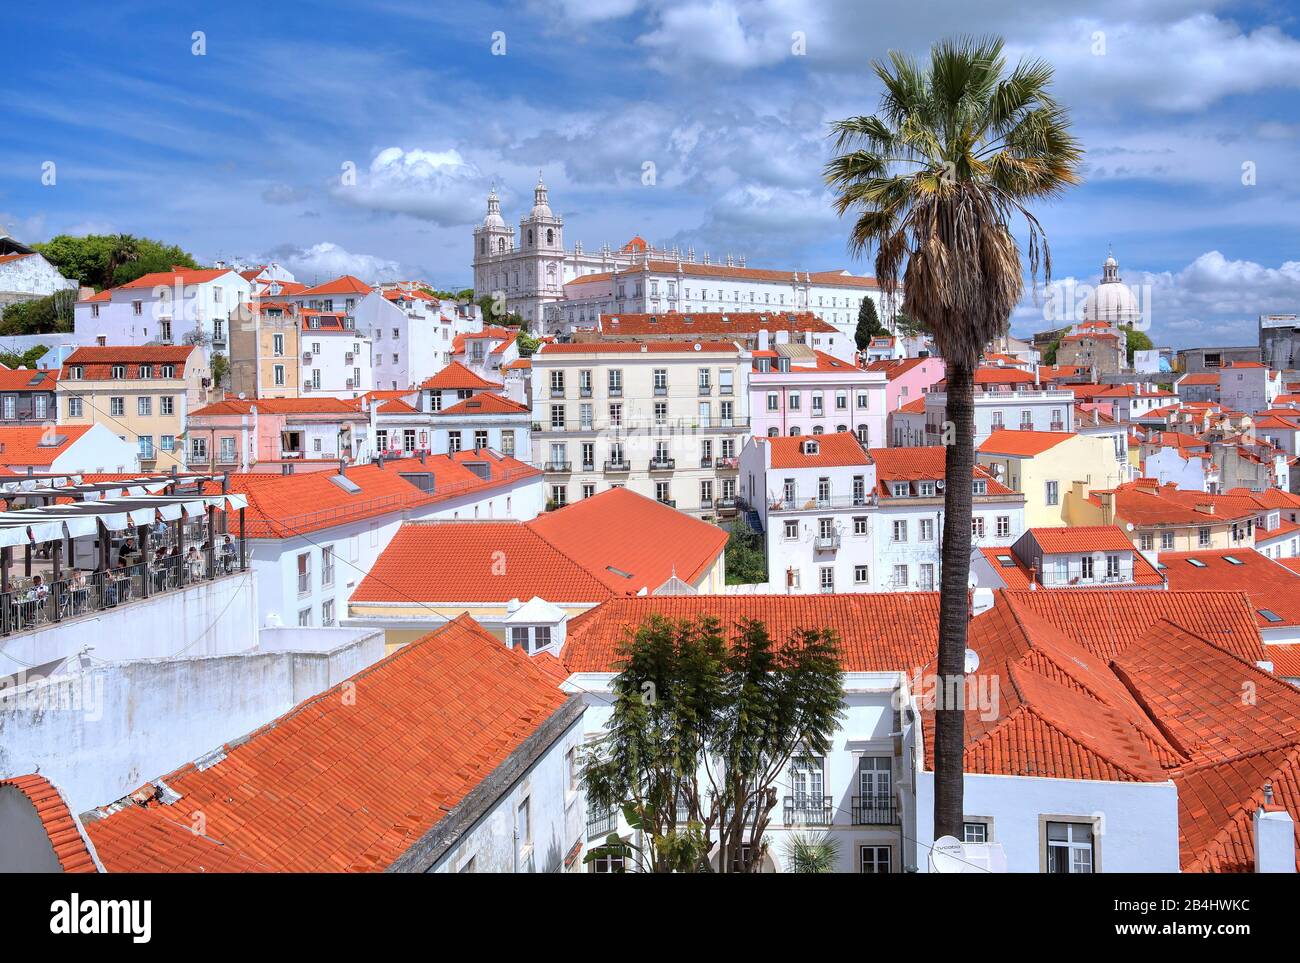 Tetti della città vecchia con il monastero Sao Vicente de Fora, Lisbona, Portogallo Foto Stock